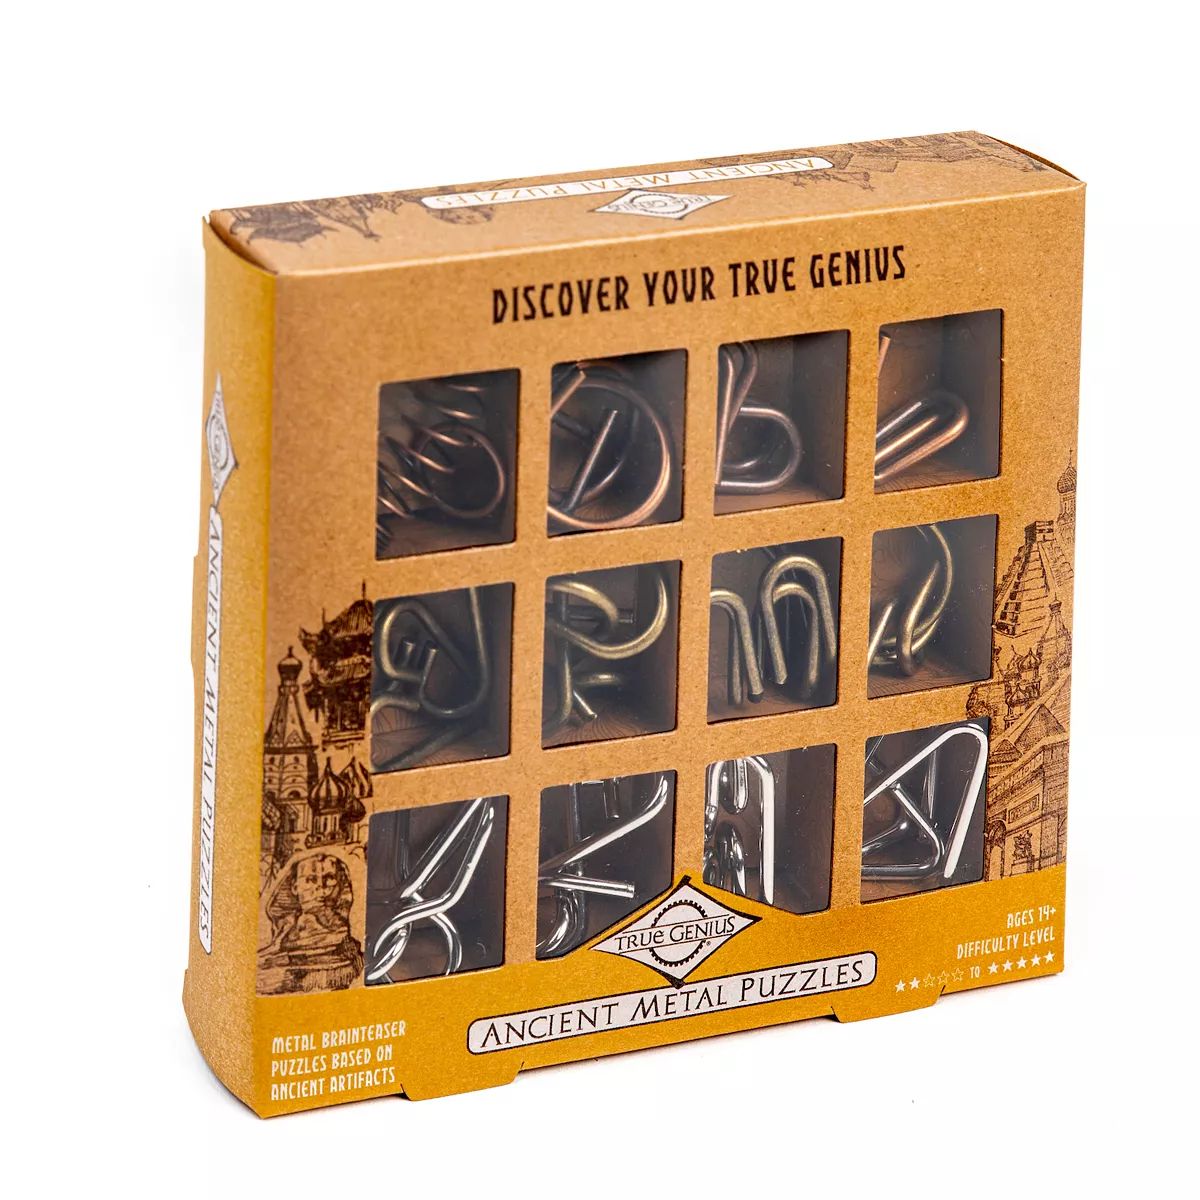 True Genius Ancient Metal Puzzle Set | Kohl's